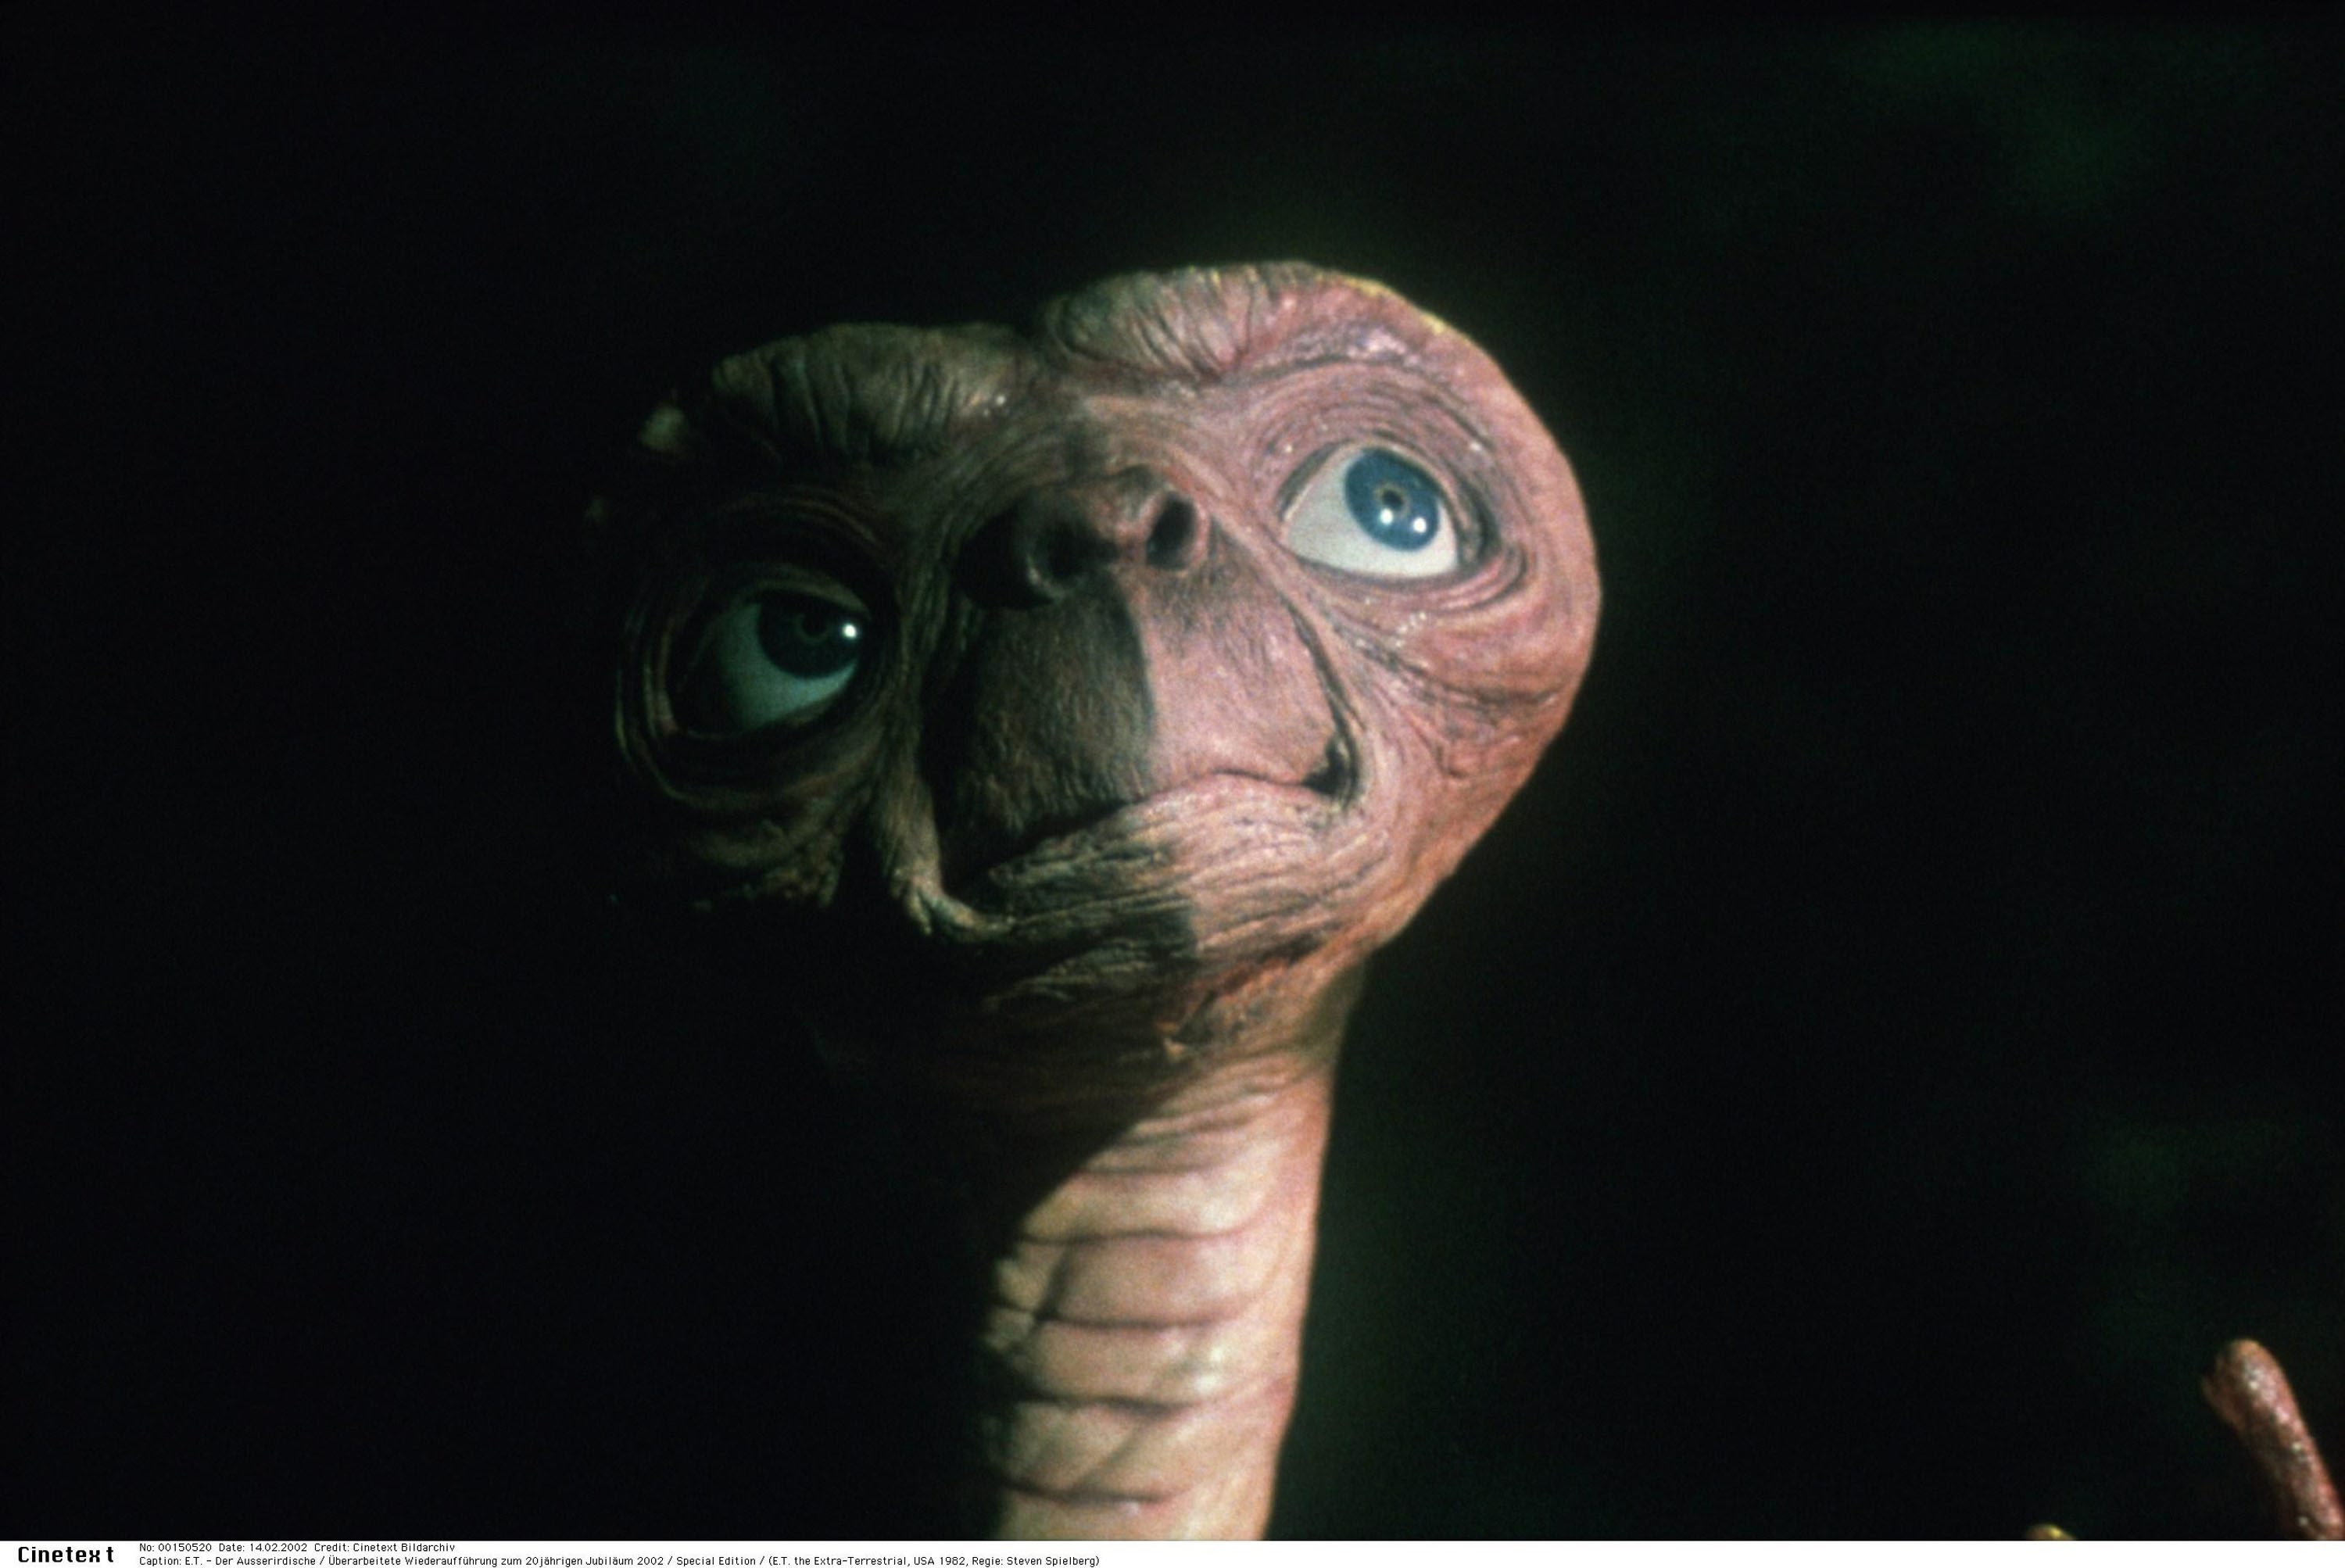 Filmen om E.T. vann titeln som världens bästa familjefilm, enligt en stor brittisk undersökning.